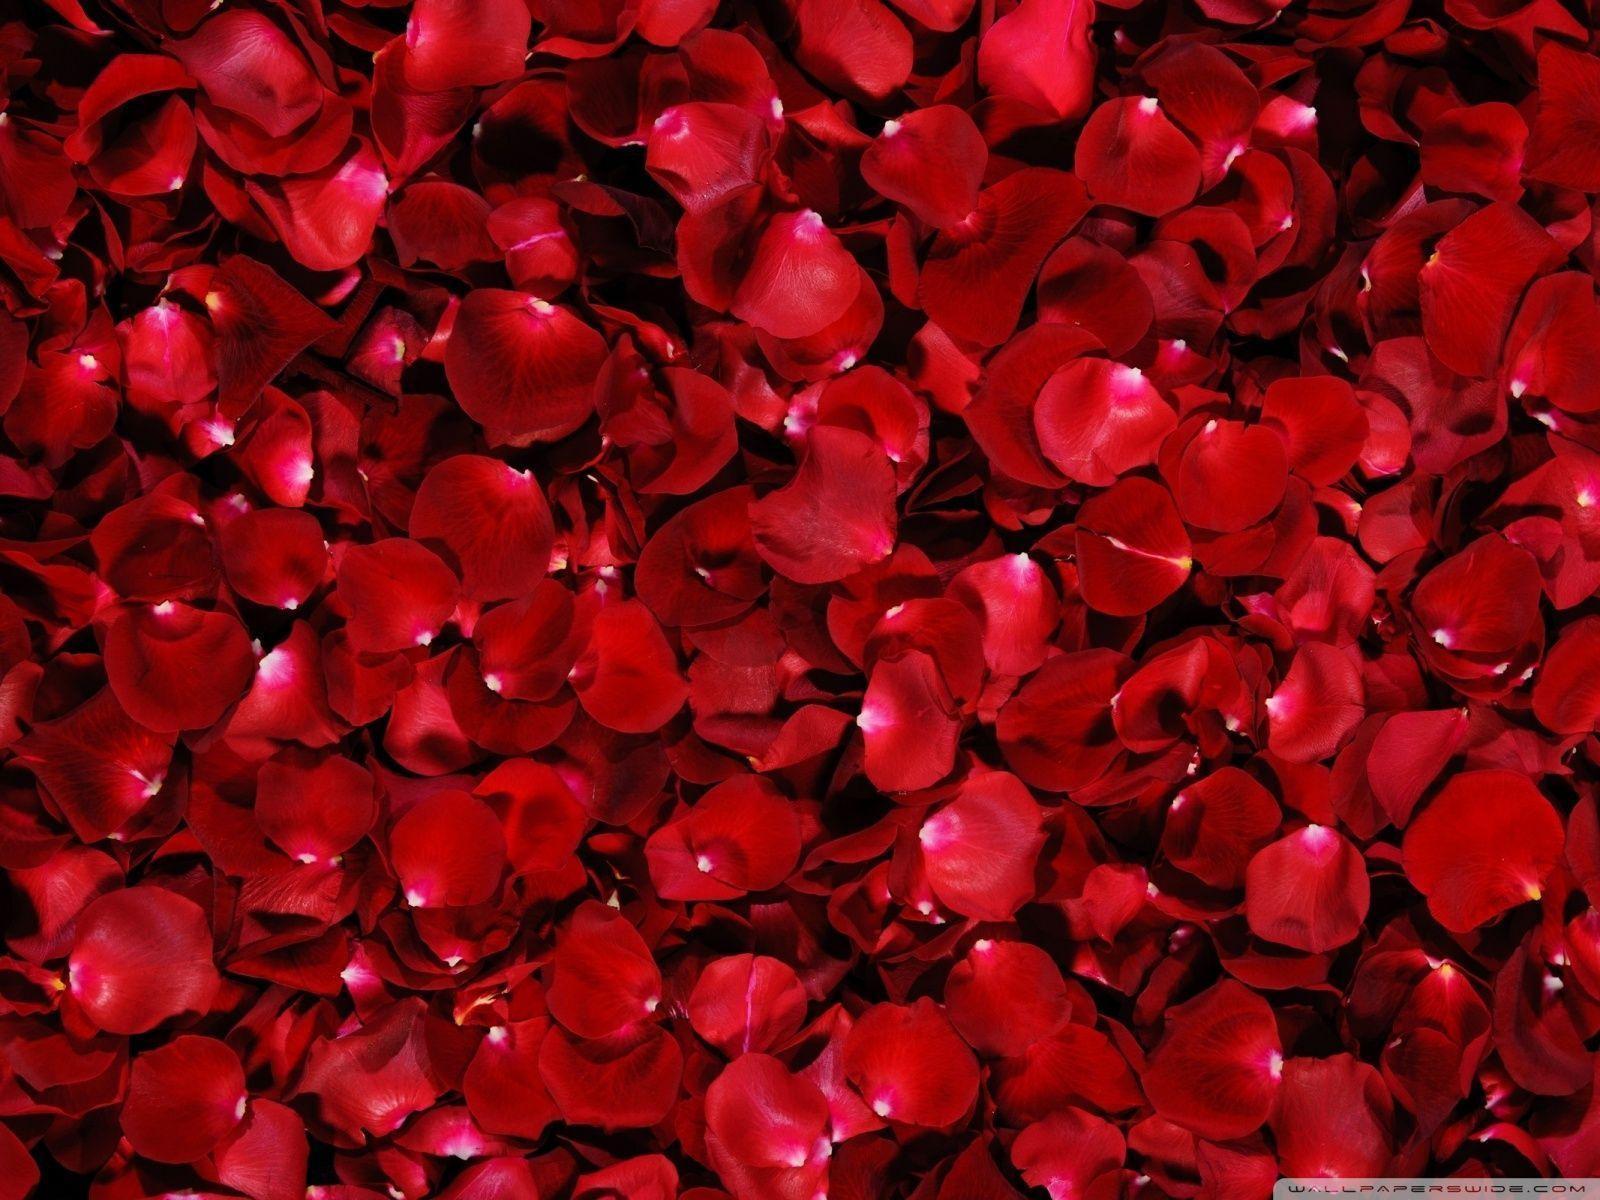 Wallpaper For > Red Rose Wallpaper For Desktop